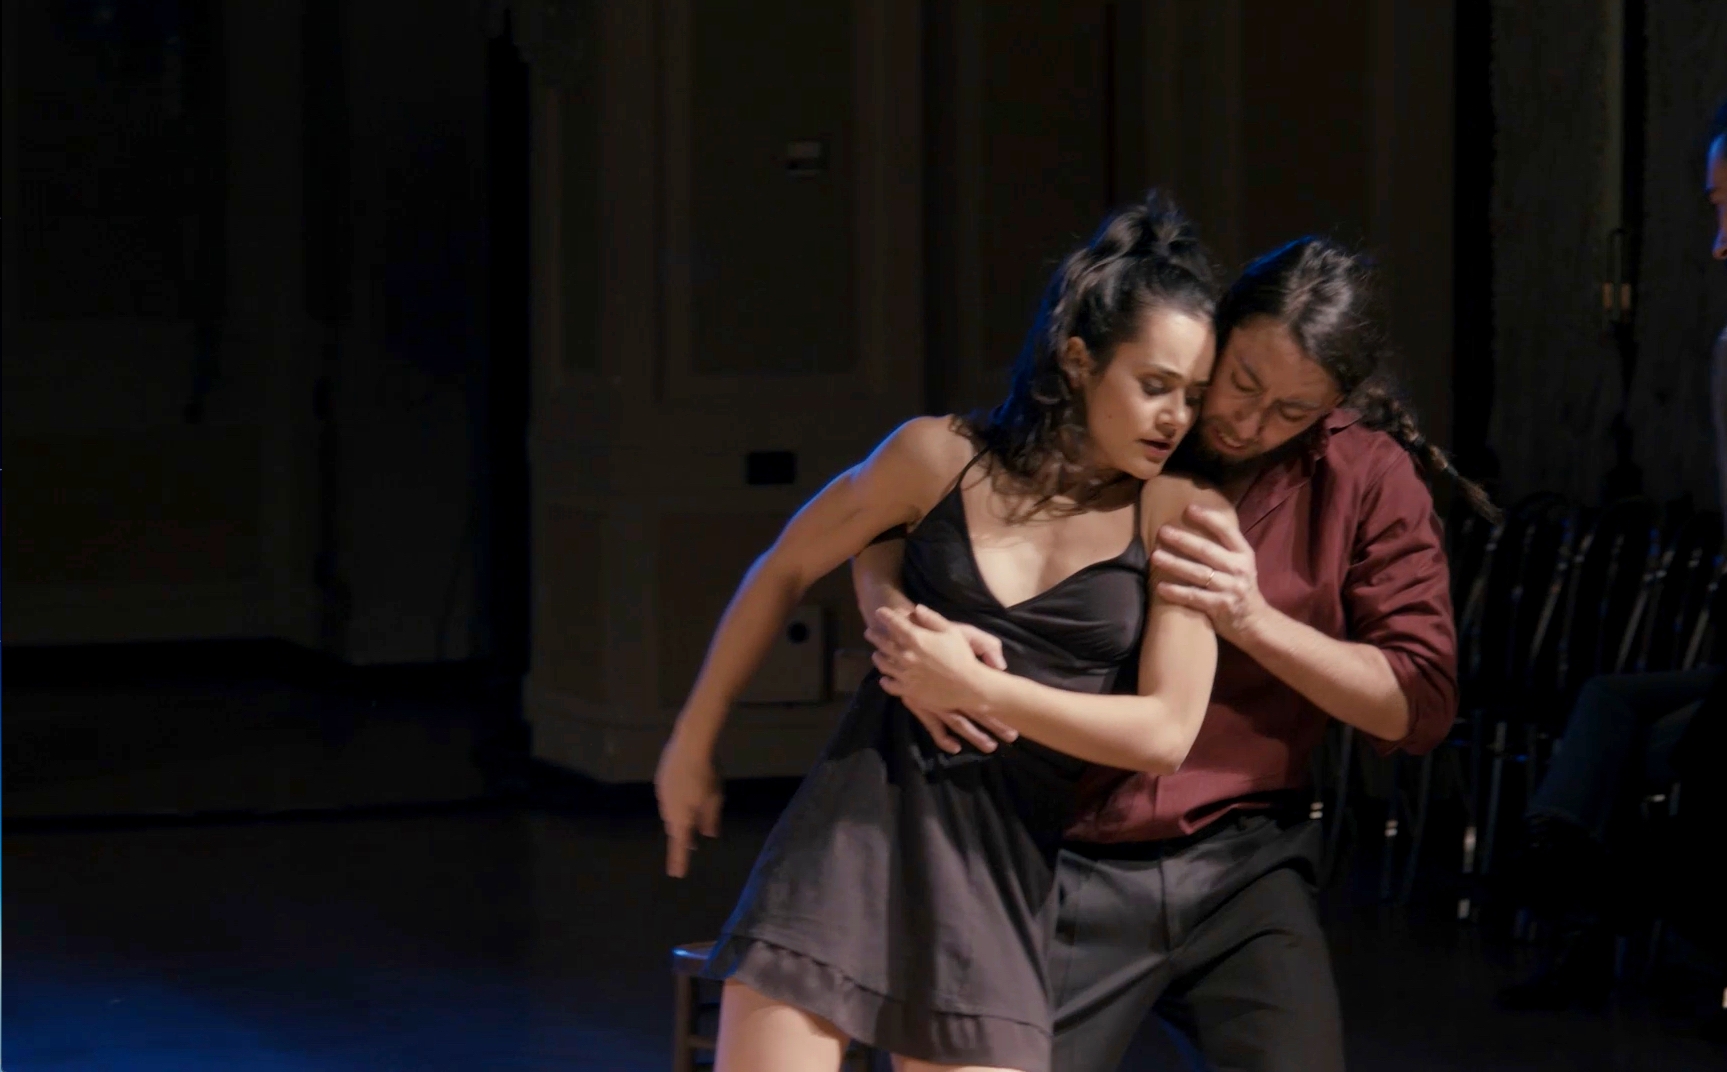 Amore, teatro e tango argentino in scena al Castello di Romeo - Mercoledì 10 luglio ore 21.15